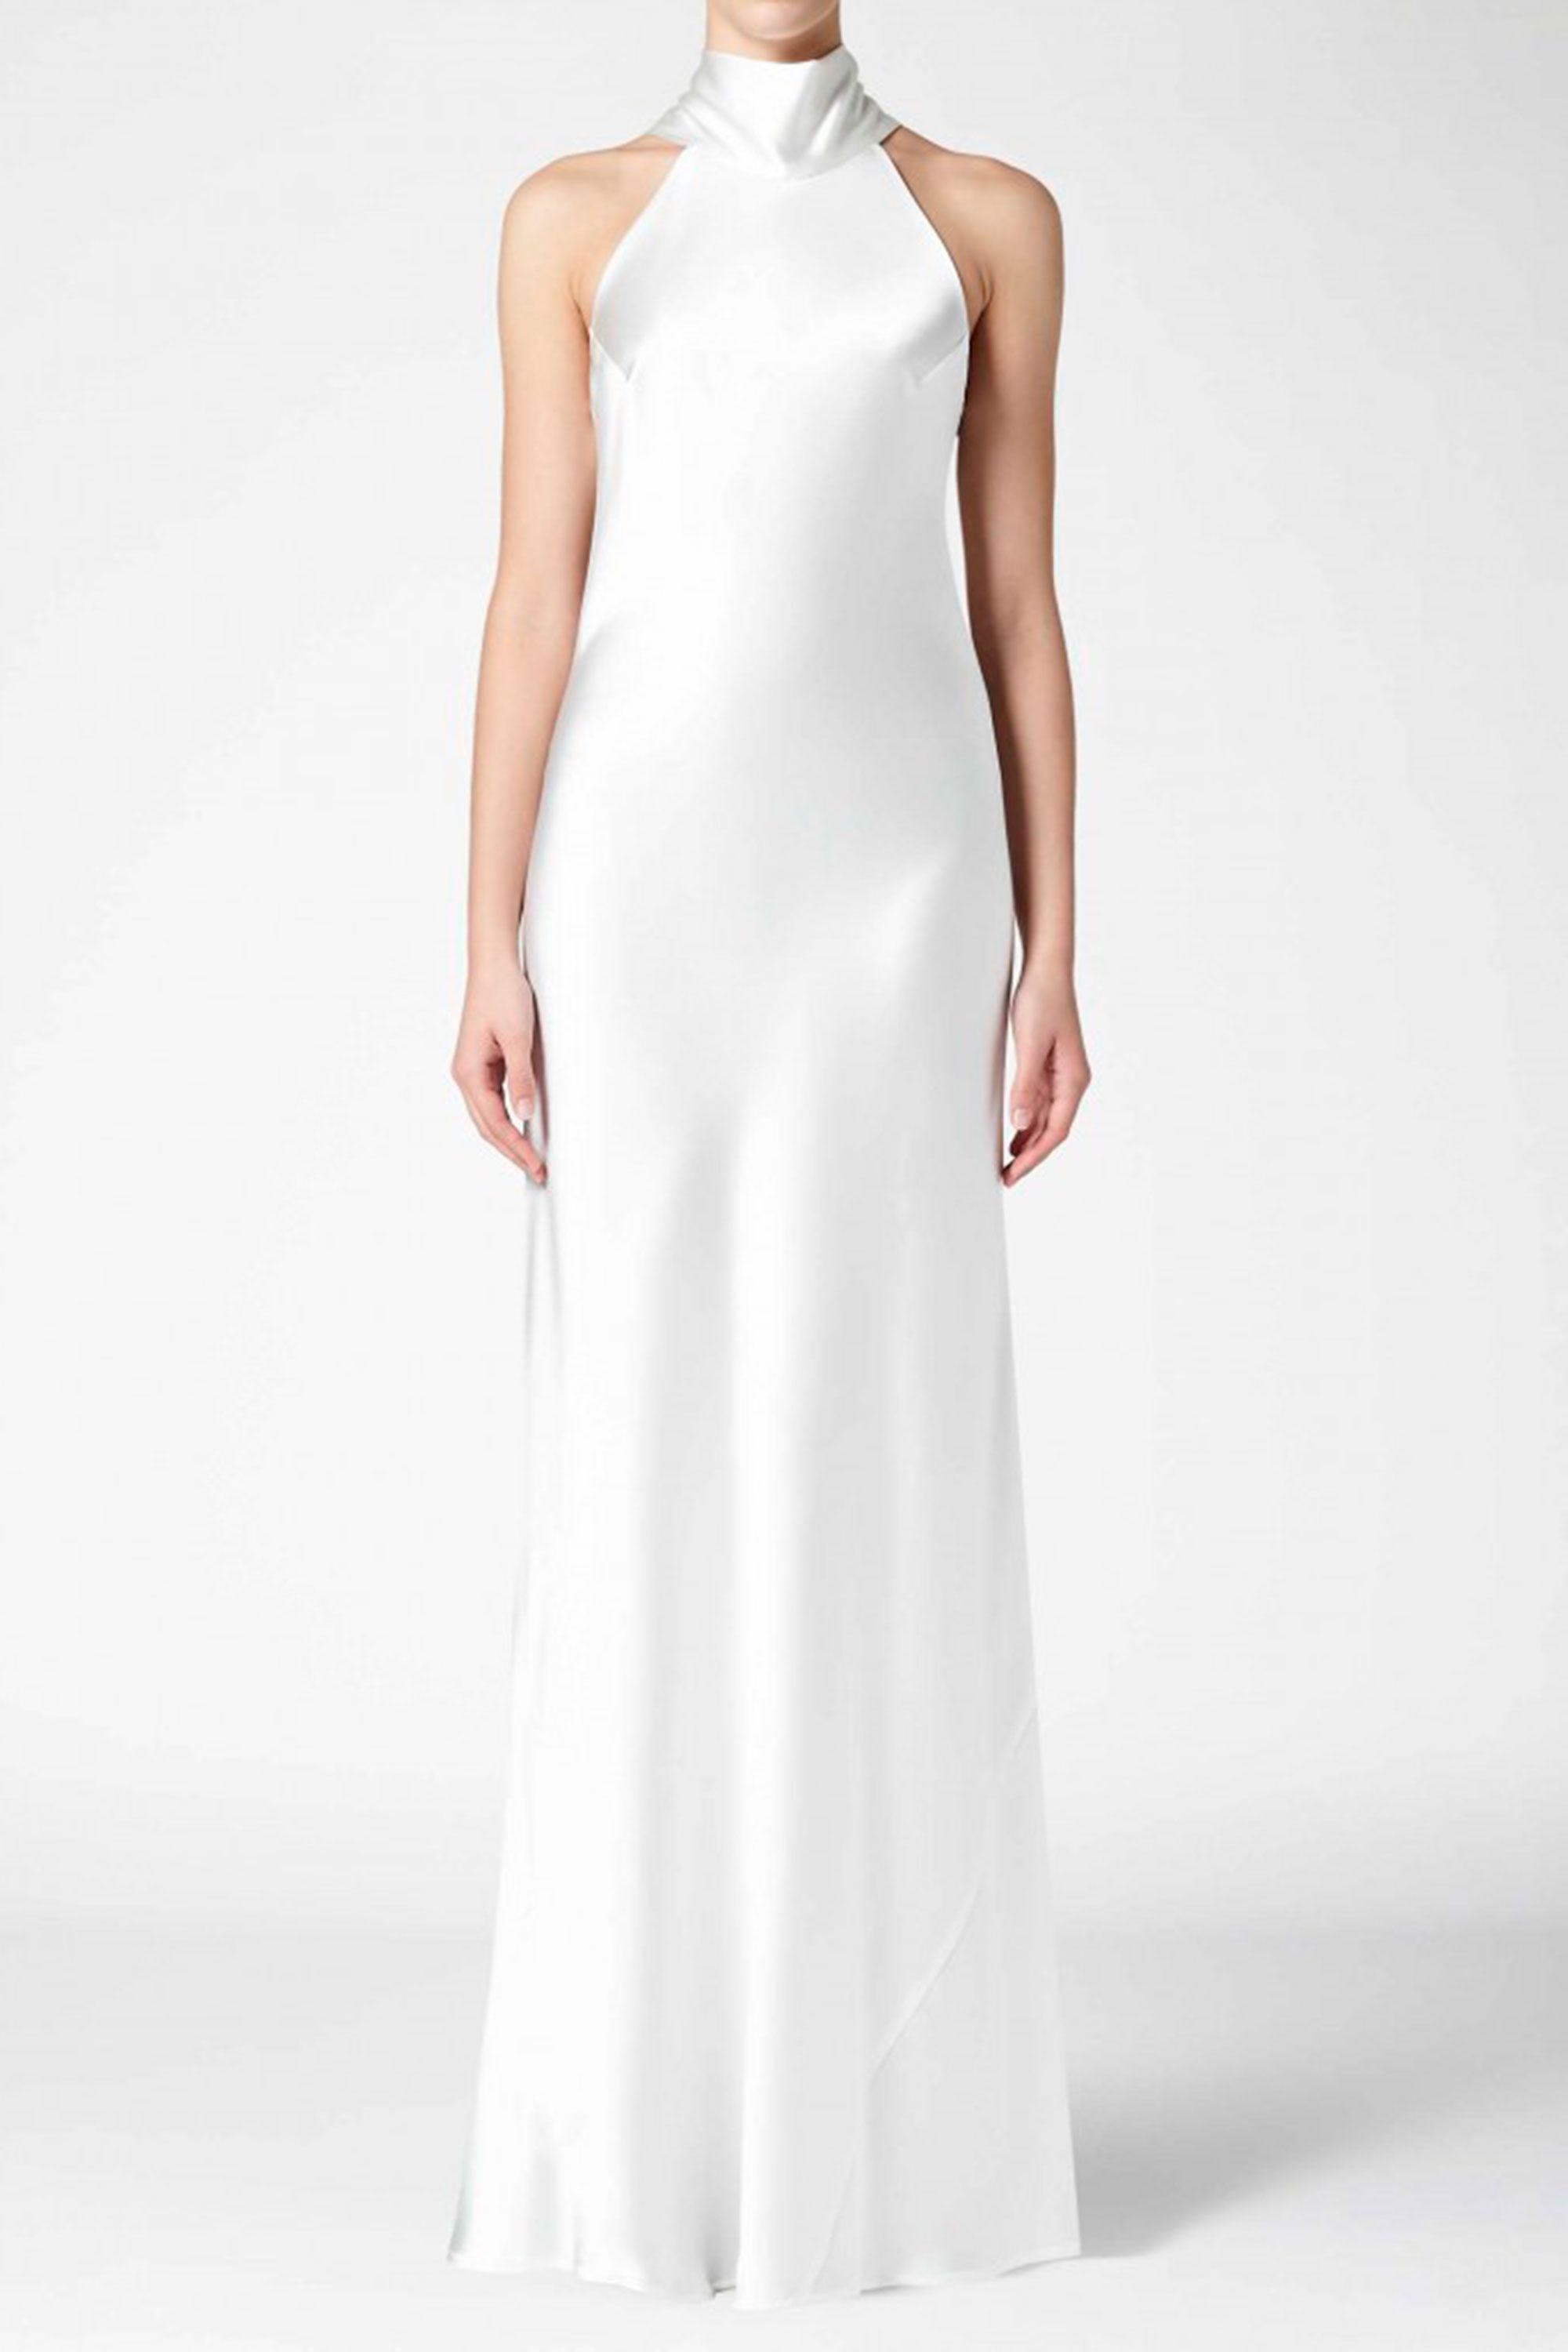 White High Neck Floor Length Dress